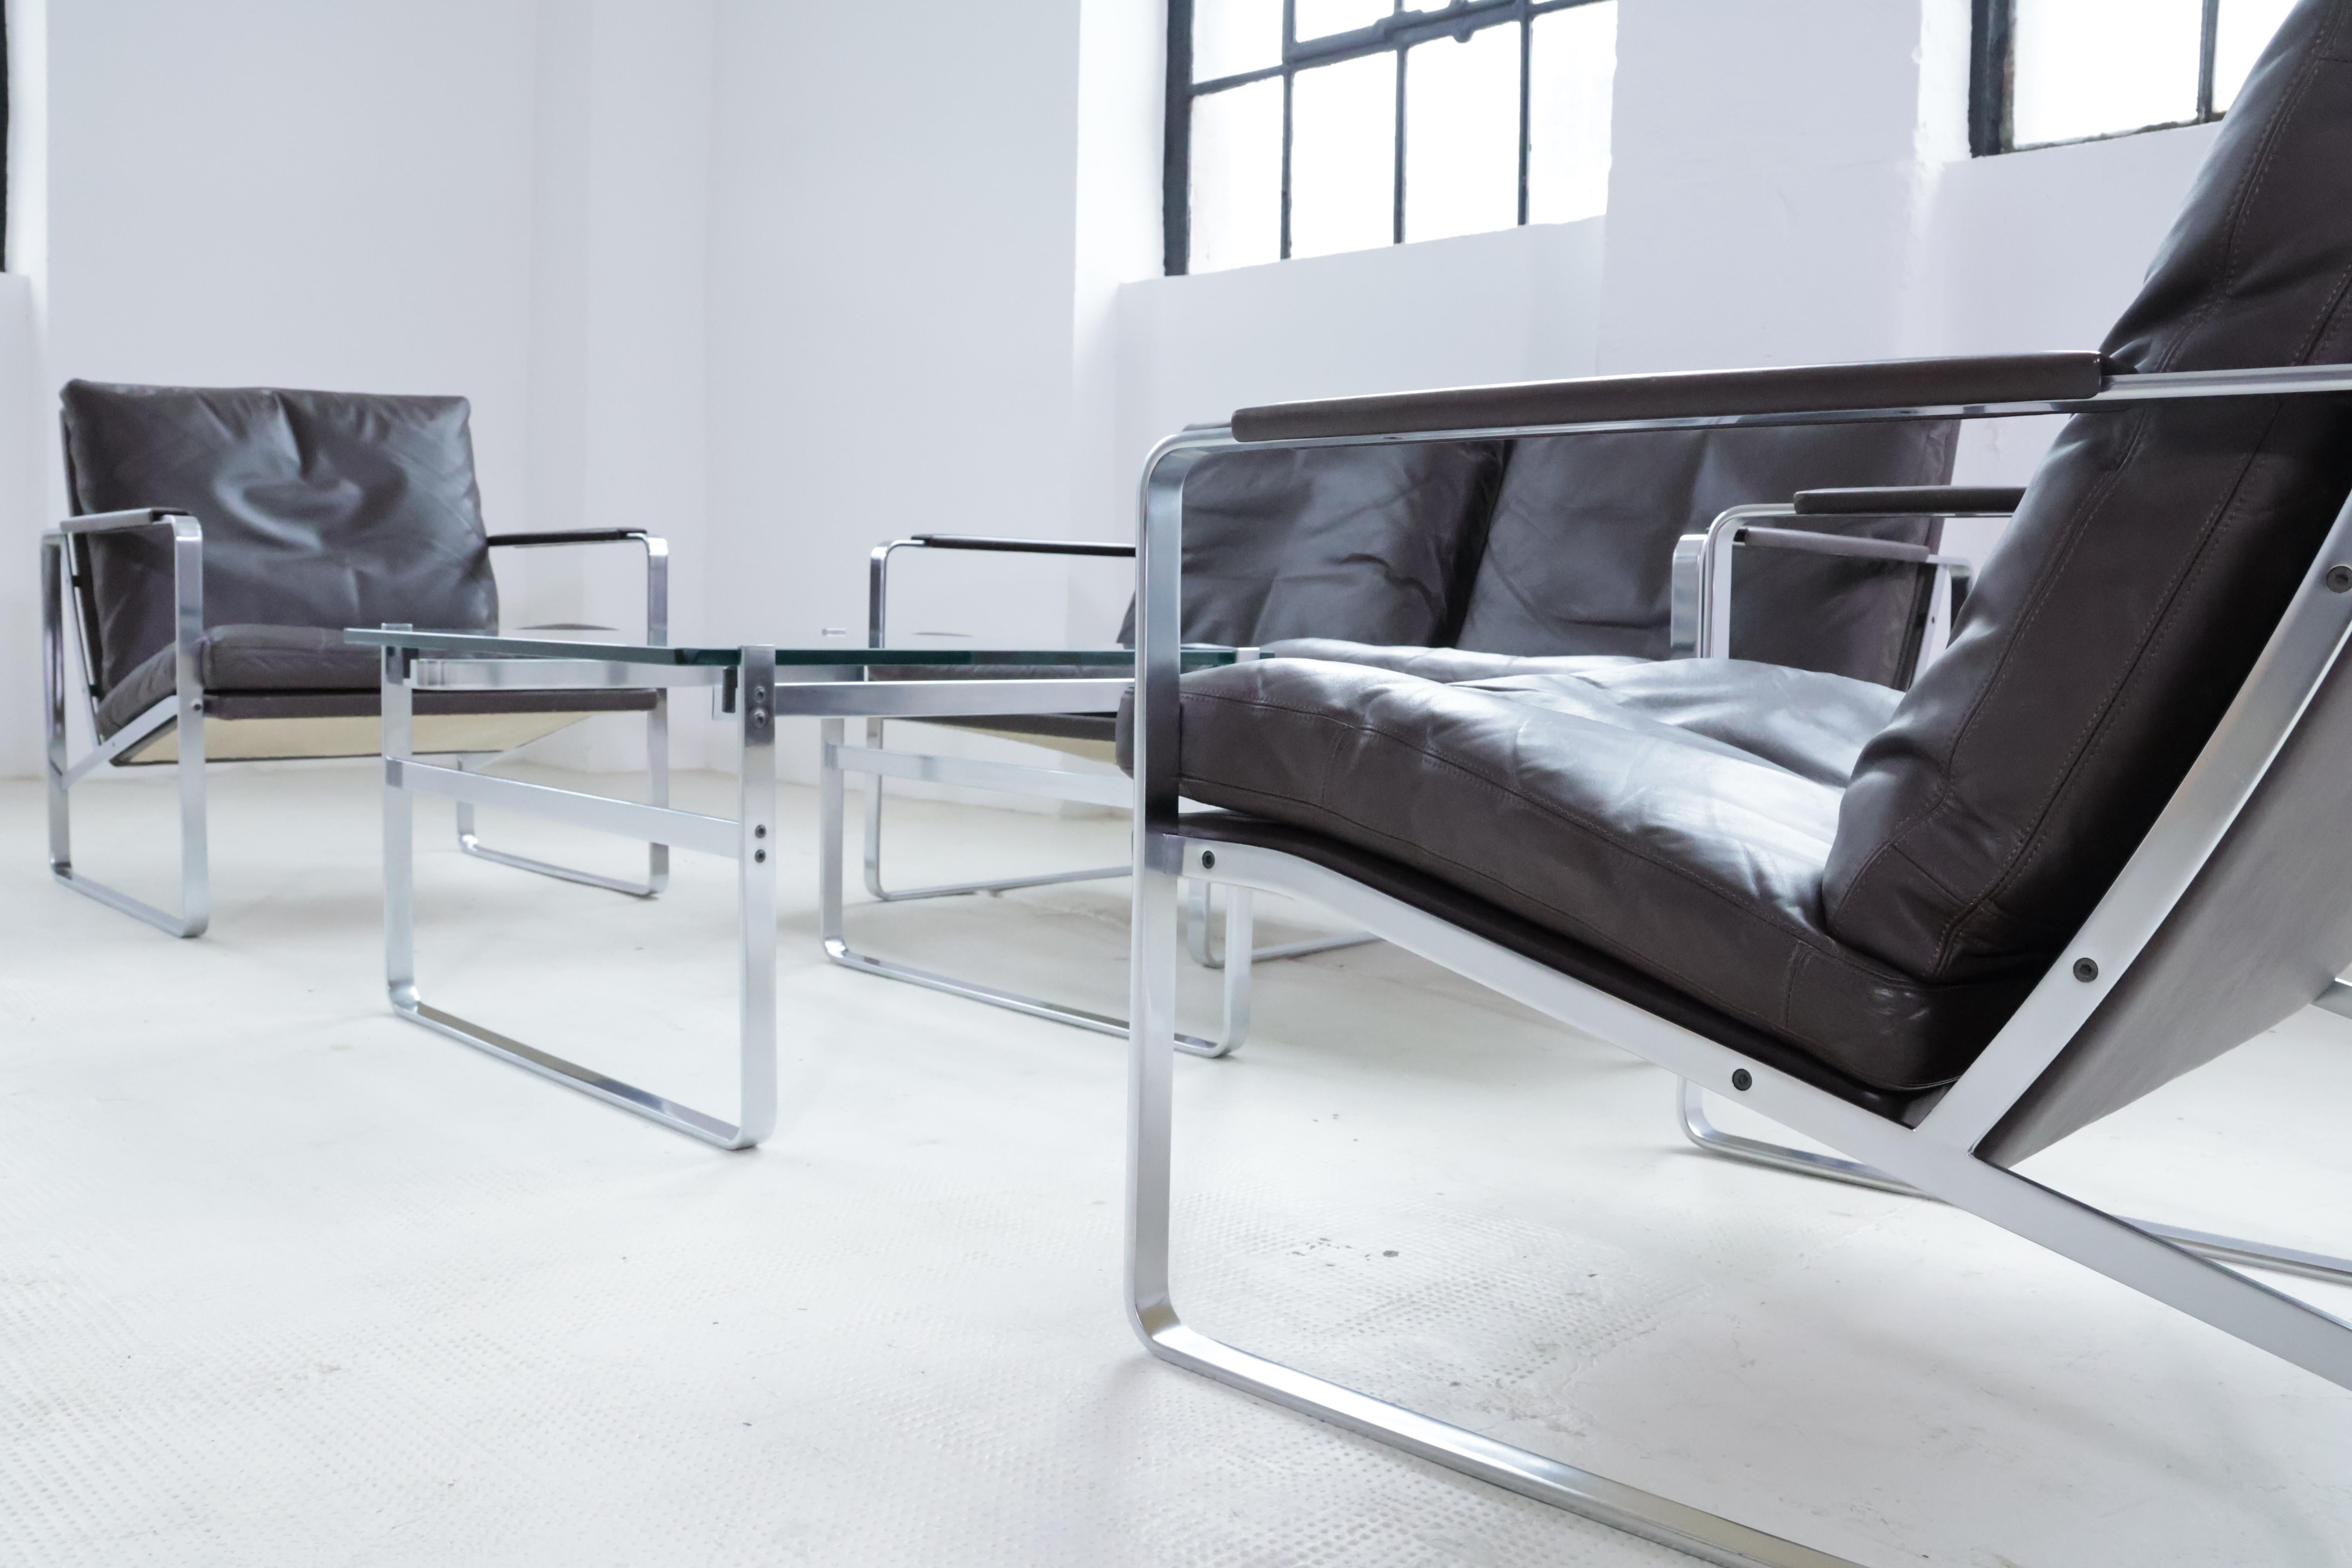 Deux fauteuils en très bel état d'origine inaltéré par Preben Fabricius pour Arnold Exclusiv, Allemagne.

Le cadre est en acier inoxydable plat brossé avec des coussins libres en beau cuir brun foncé.

Le fauteuil et le canapé Fabricius sont des